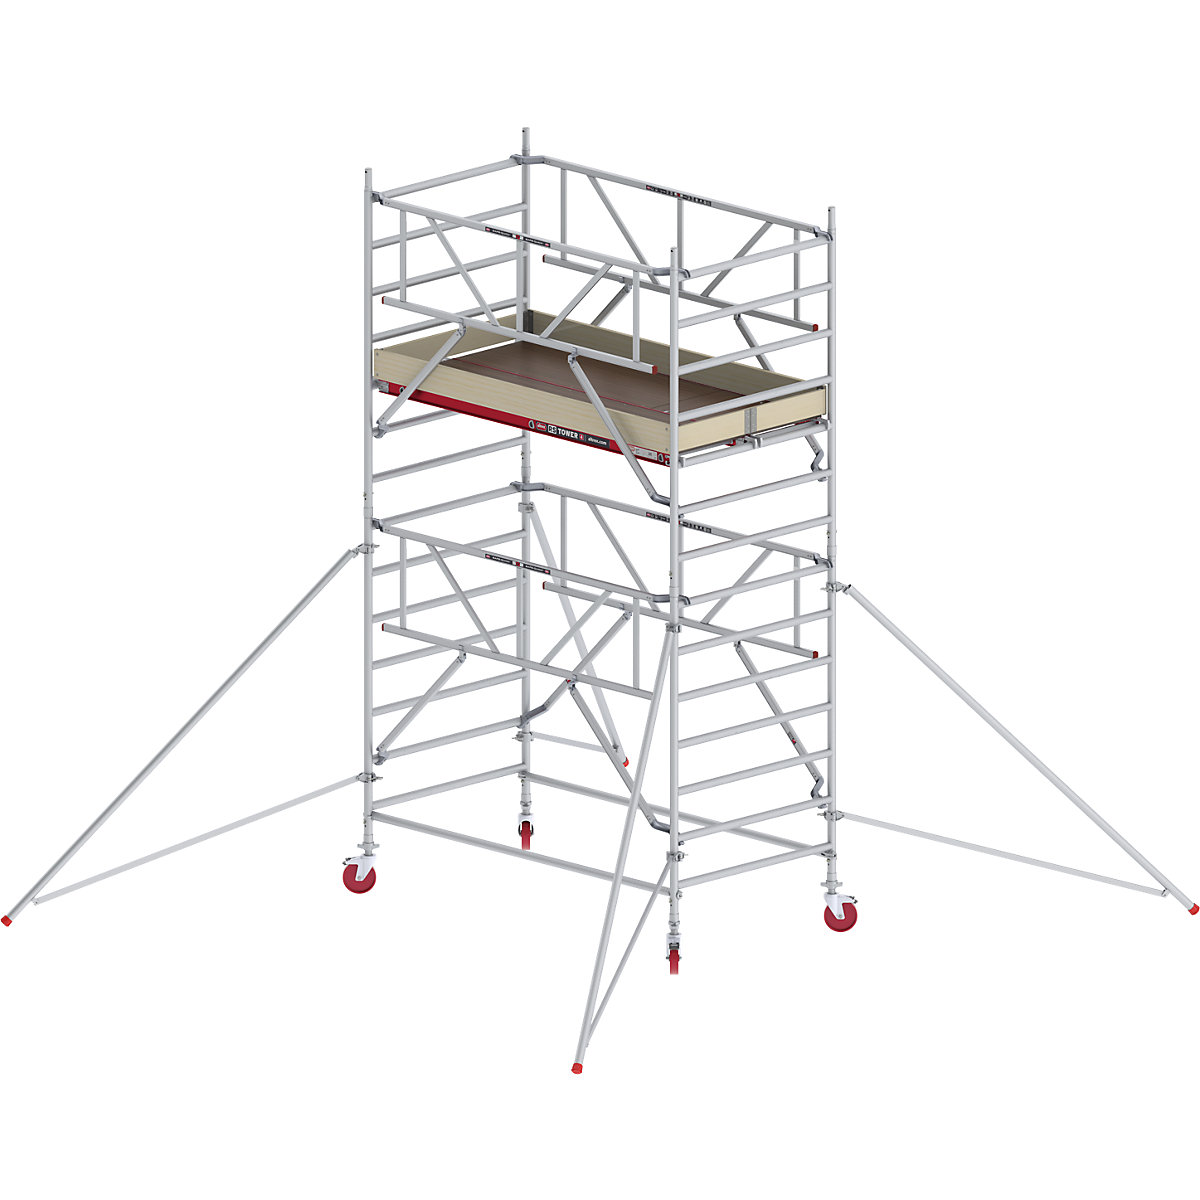 Rusztowanie ruchome RS TOWER 42, szerokie, z poręczą Safe-Quick® – Altrex, platforma drewniana, dł. 2,45 m, wys. robocza 5,20 m-5